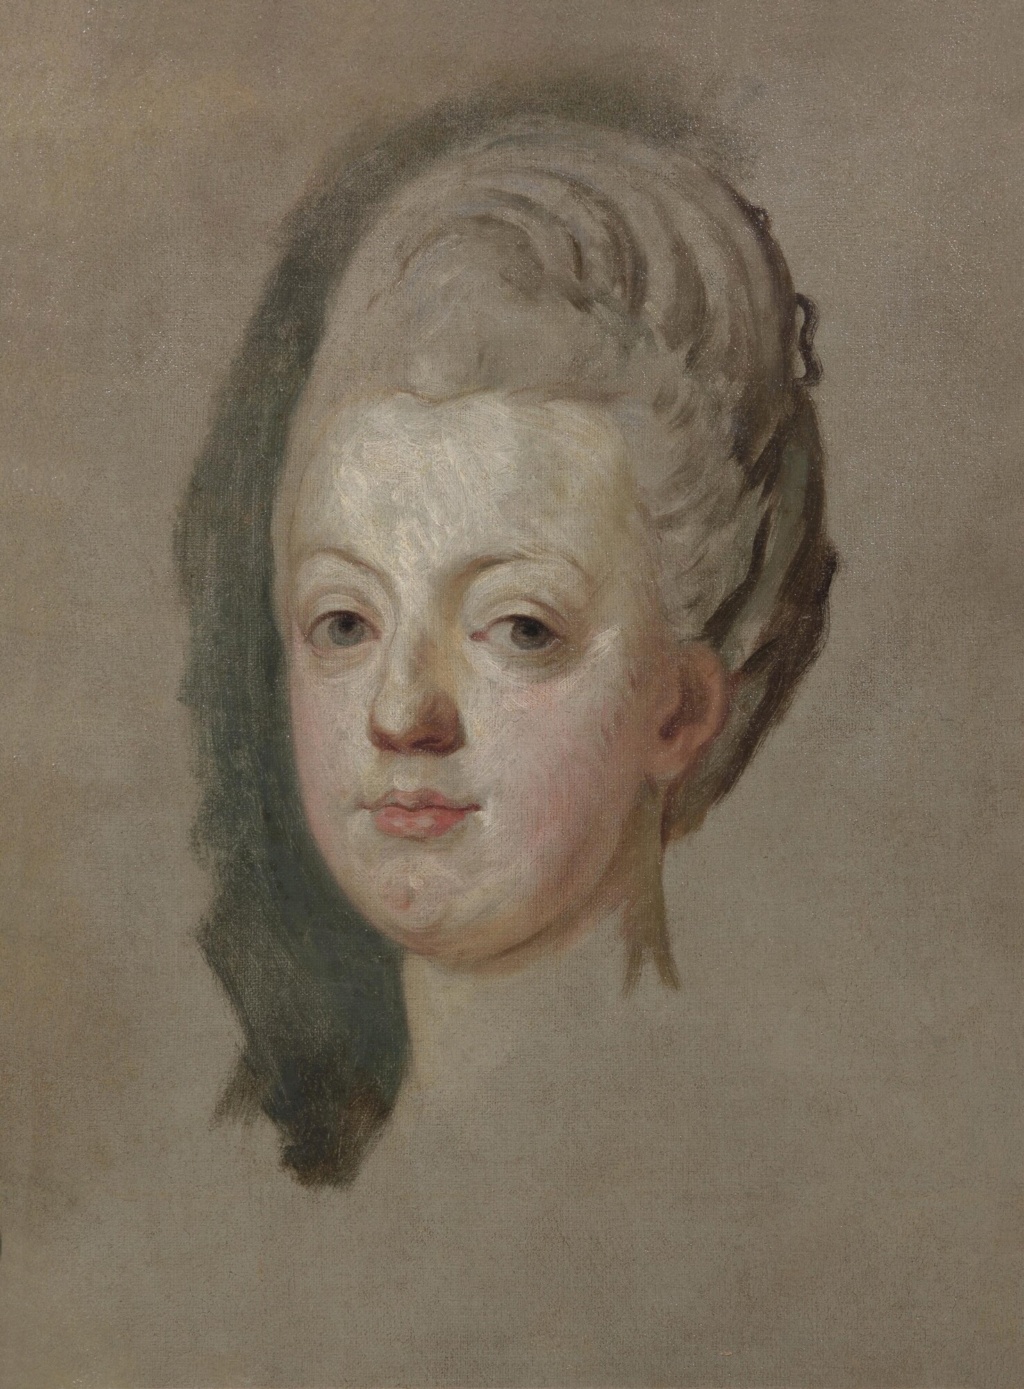 marie josephe - Portrait de Marie-Antoinette ou de Marie-Josèphe, par Meytens ? - Page 5 Downlo10